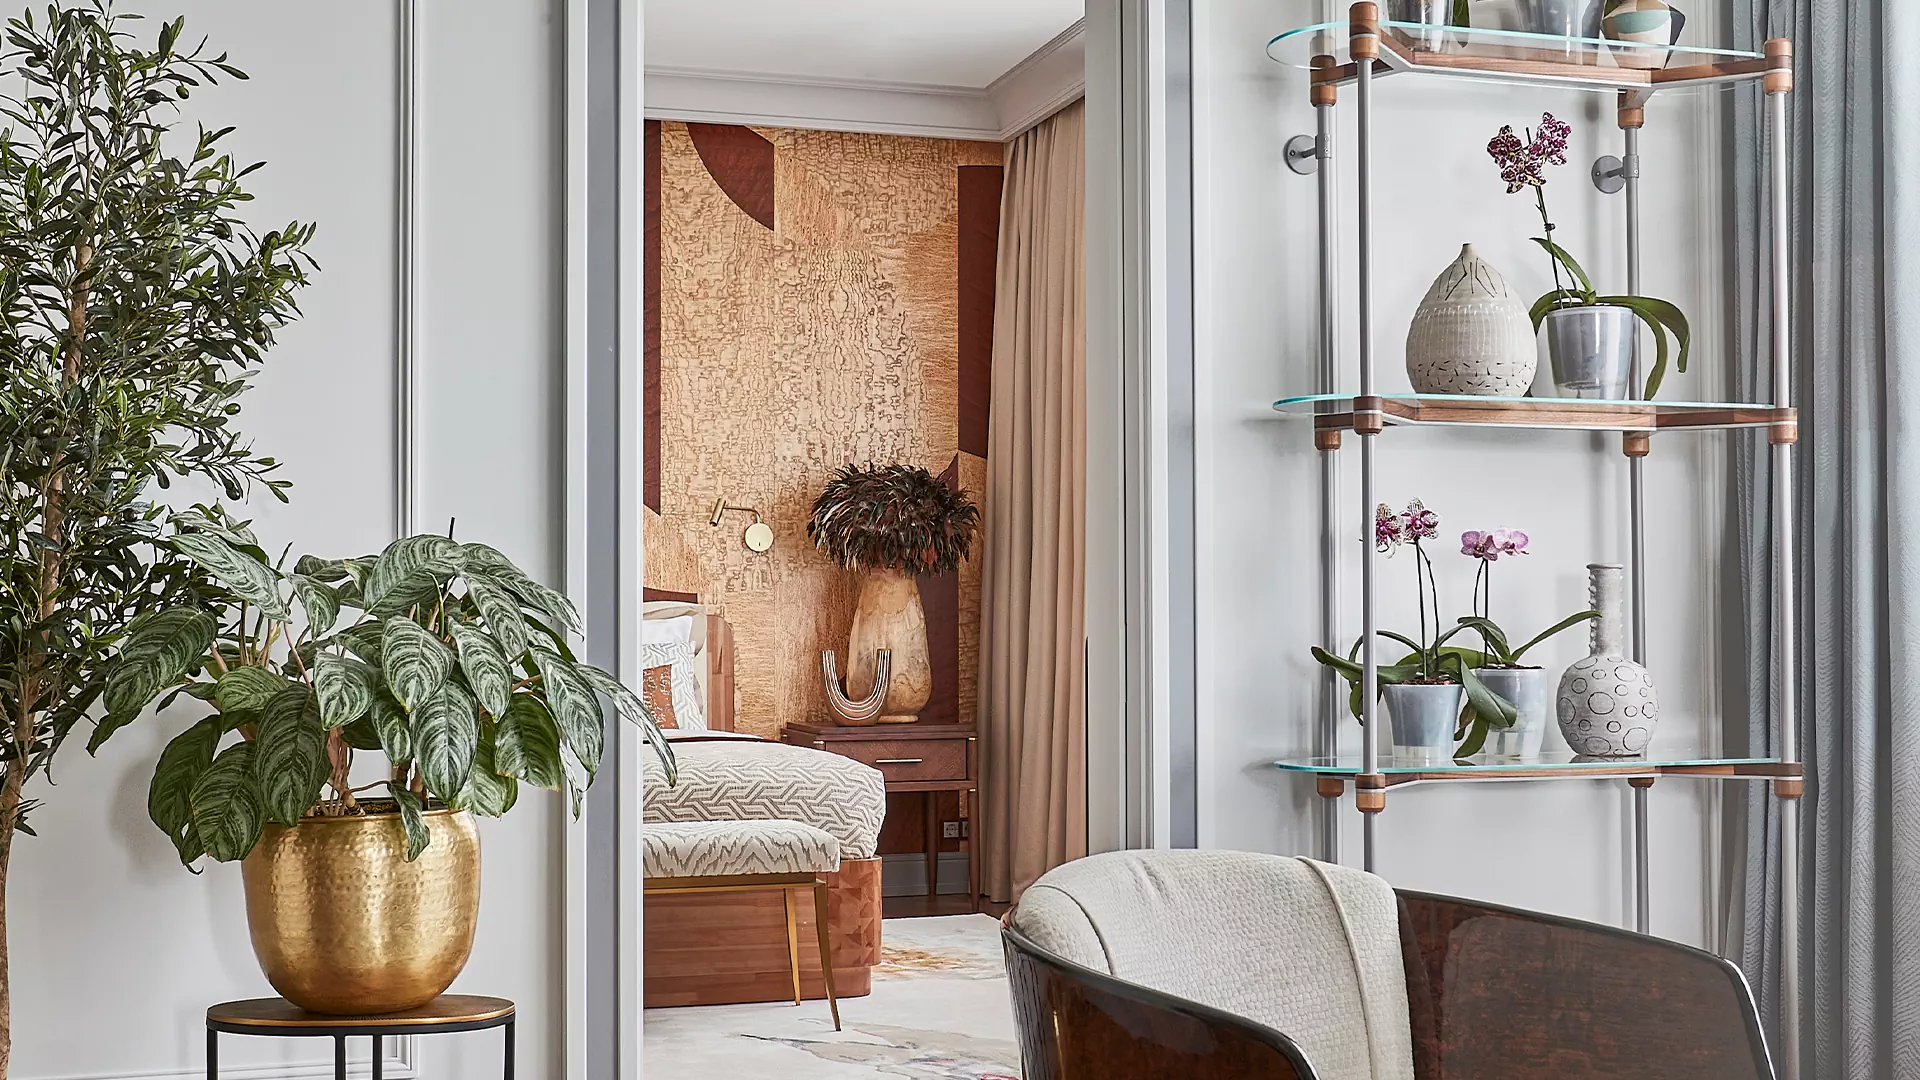 Нежный интерьер квартиры с цветочными мотивами и сотнями орхидей — проект Светланы Юрковой и Елены Никитиной